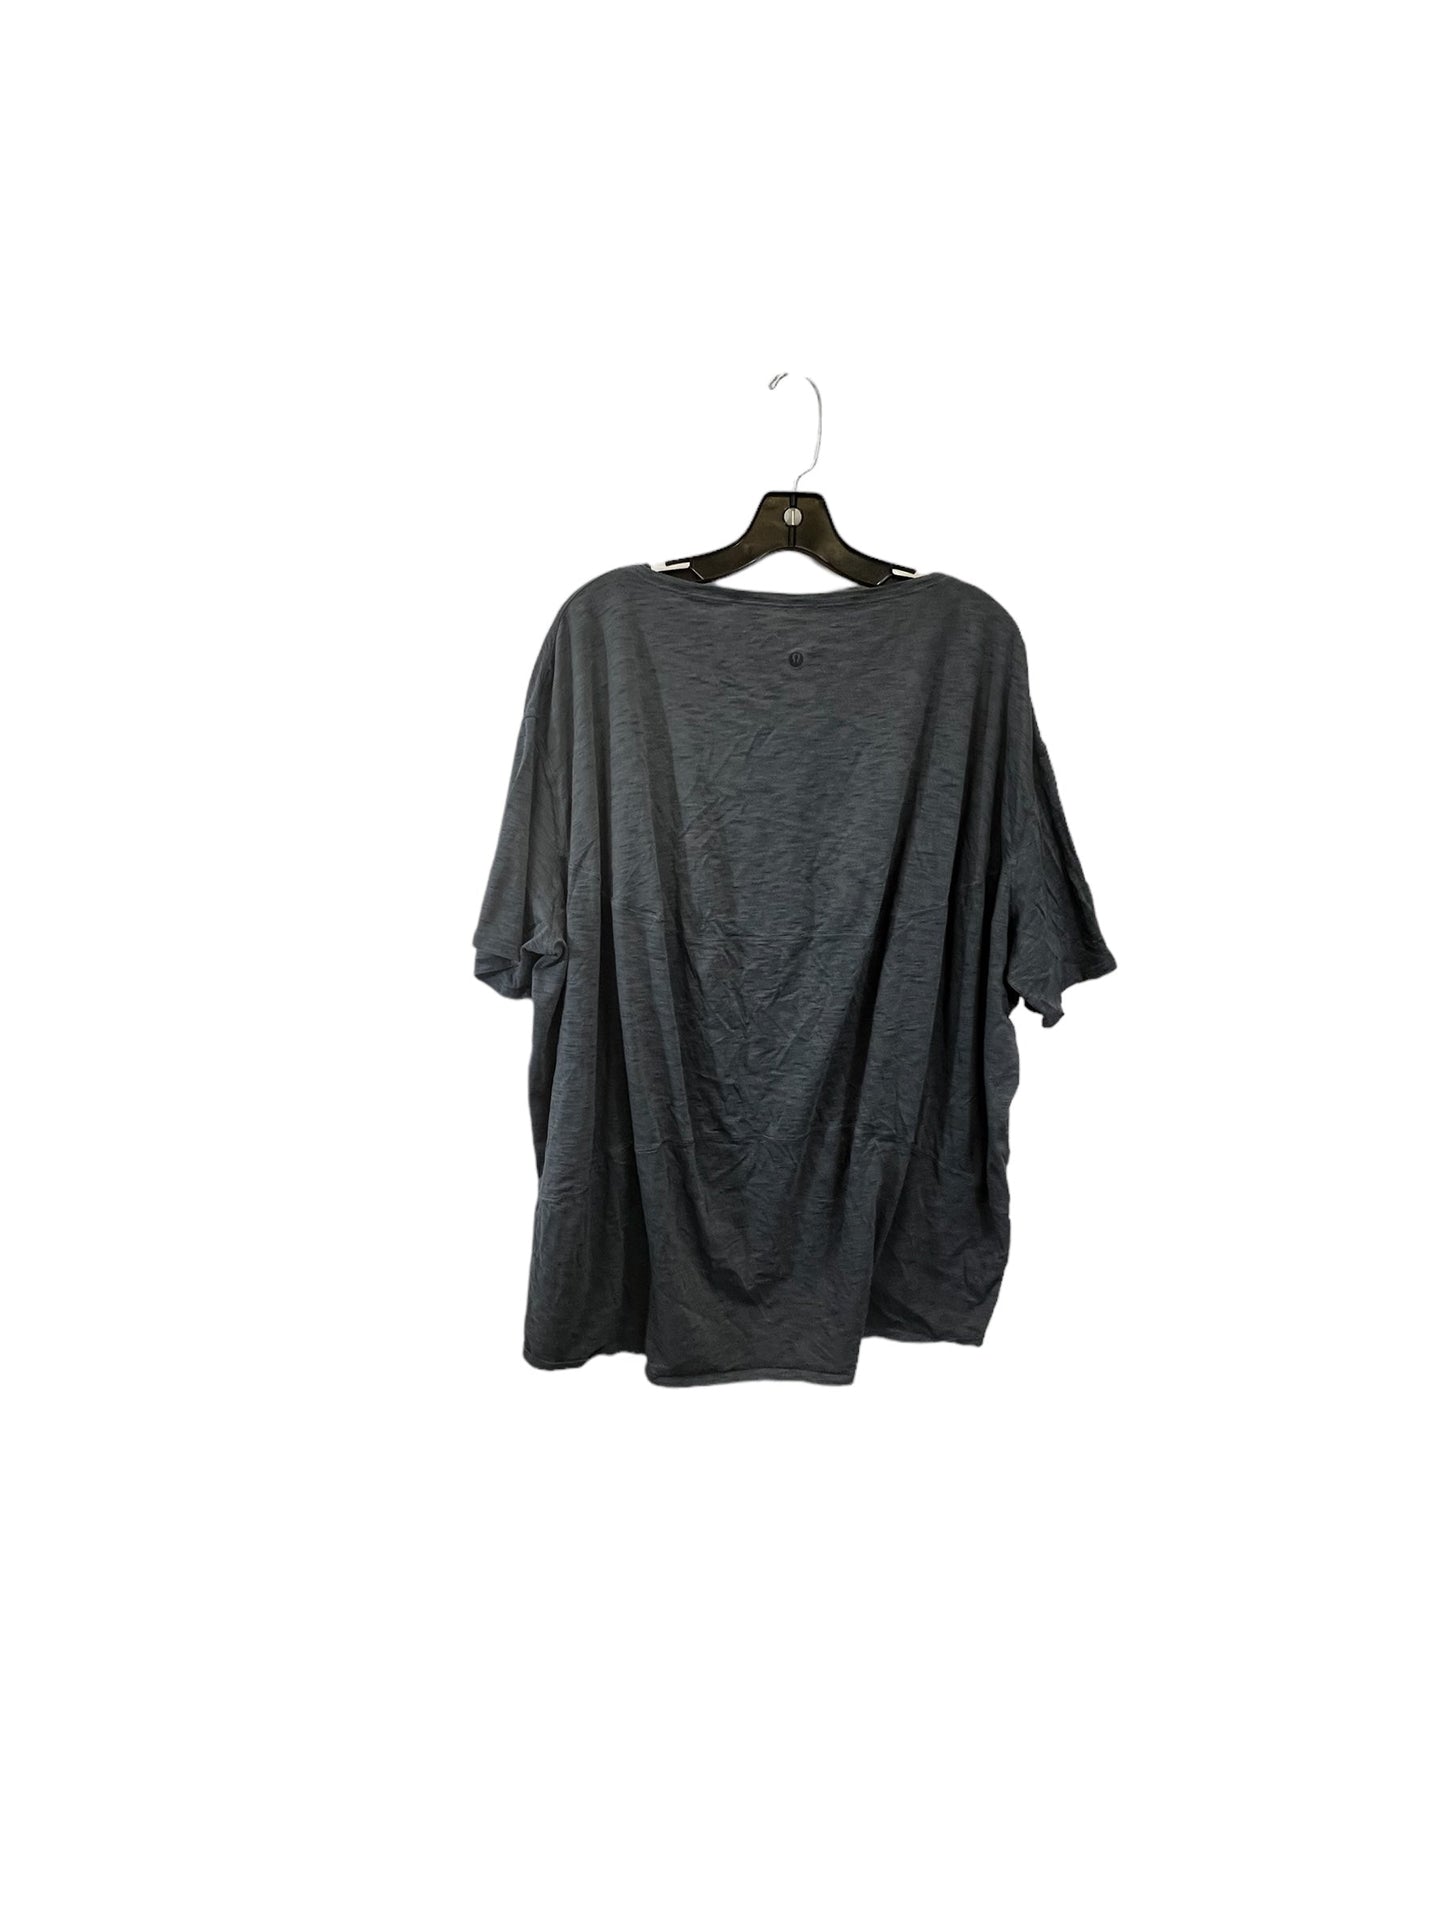 Grey Athletic Top Short Sleeve Lululemon, Size 1x